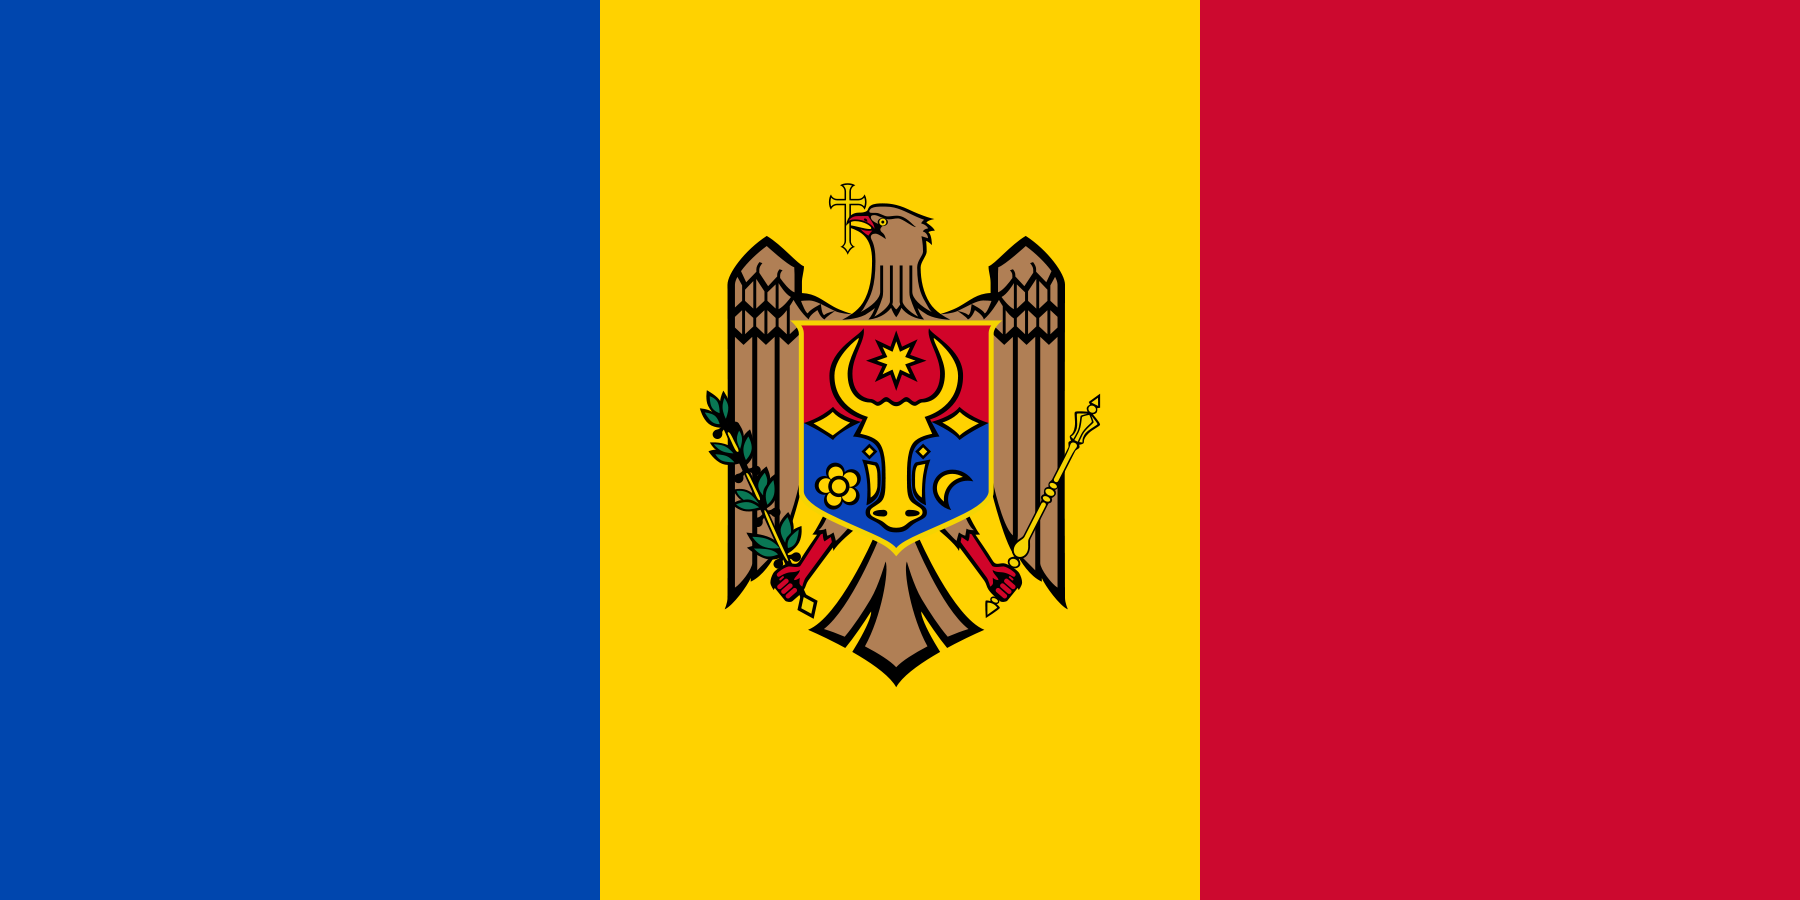 Description: D:\0\0 ff final\Flag_of_Moldova.png